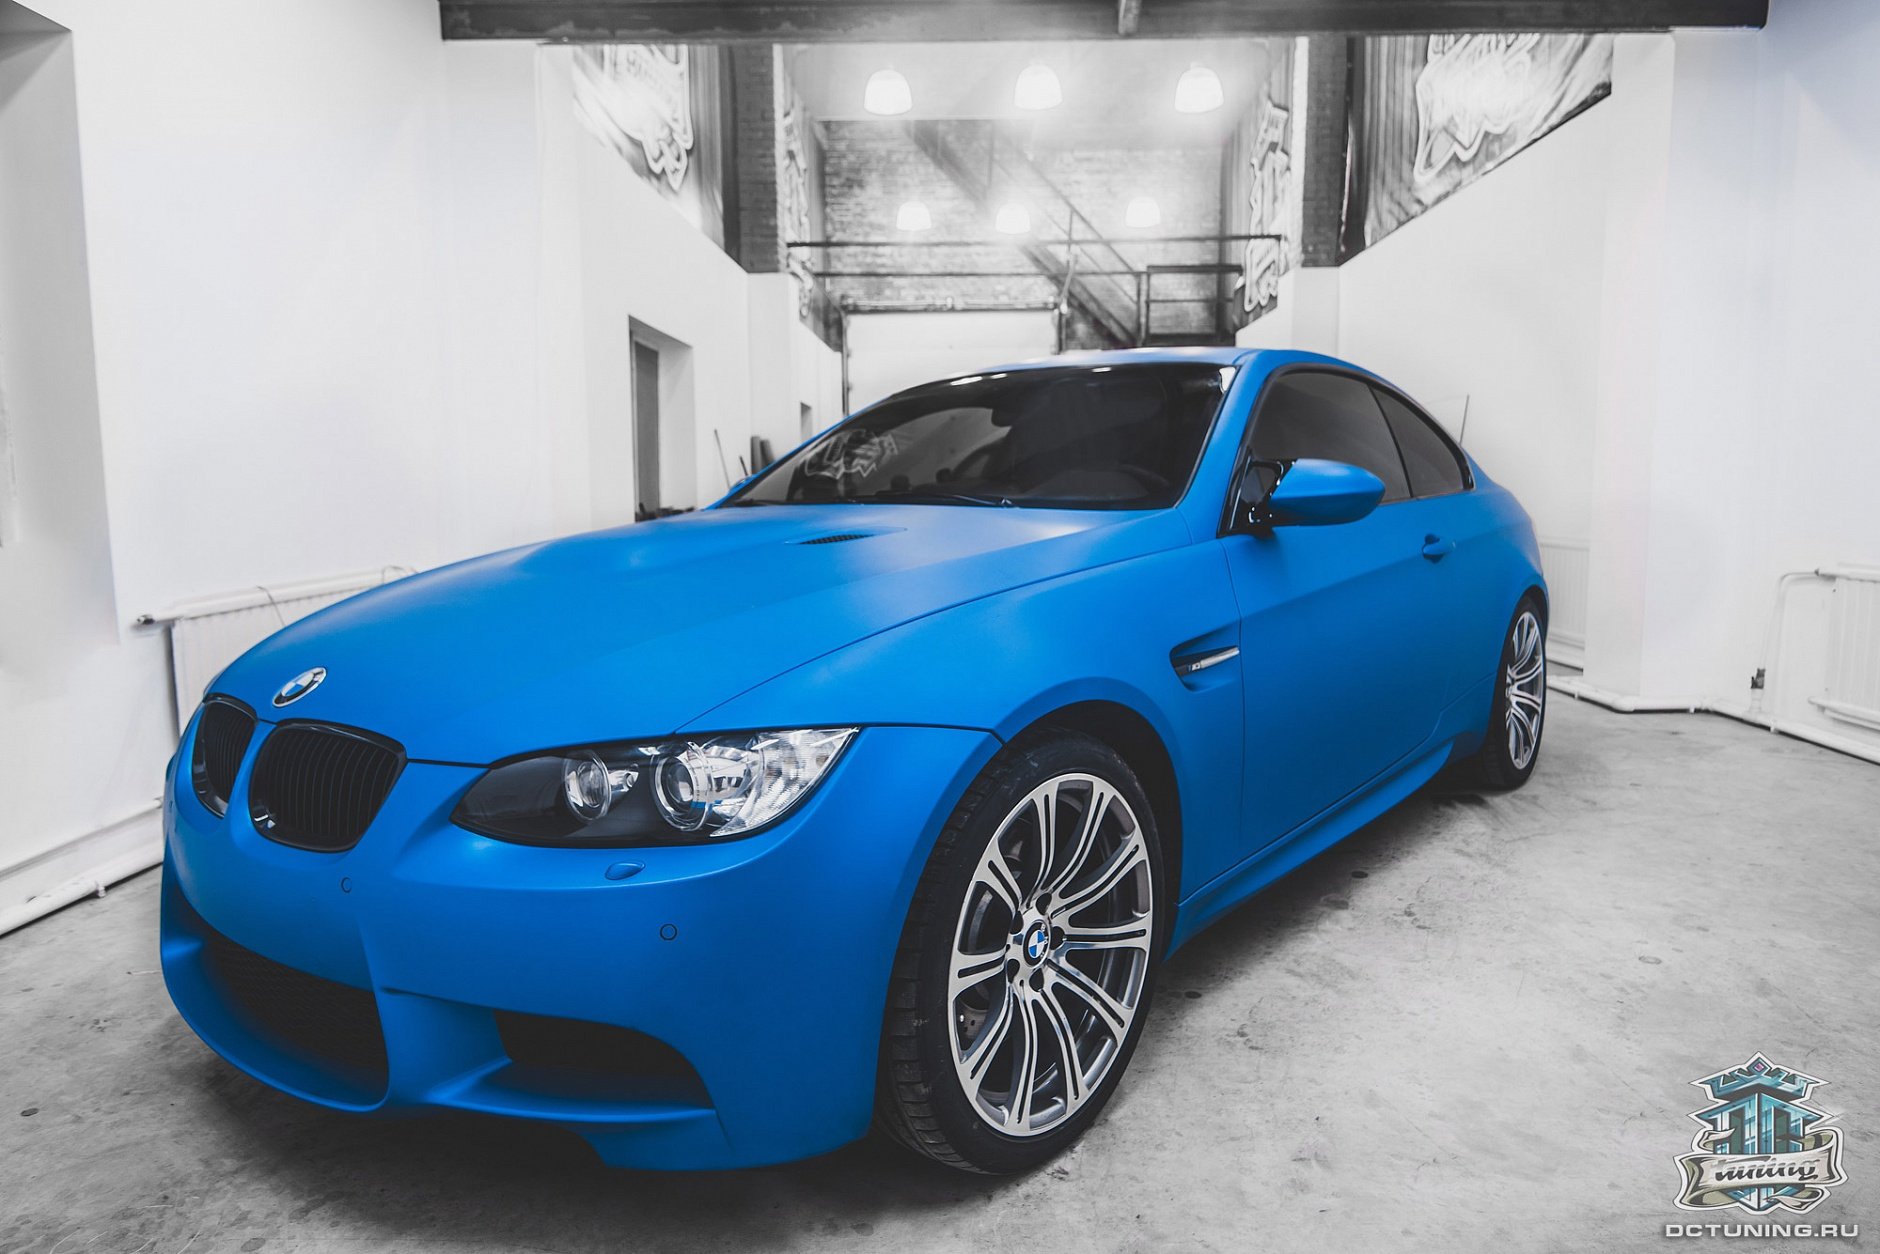 Цвет синий алюминий. BMW 7 2023 синяя матовая. BMW 3 синяя матовая. БМВ 38е синий матовый. Синяя БМВ В матовой пленке е 60.